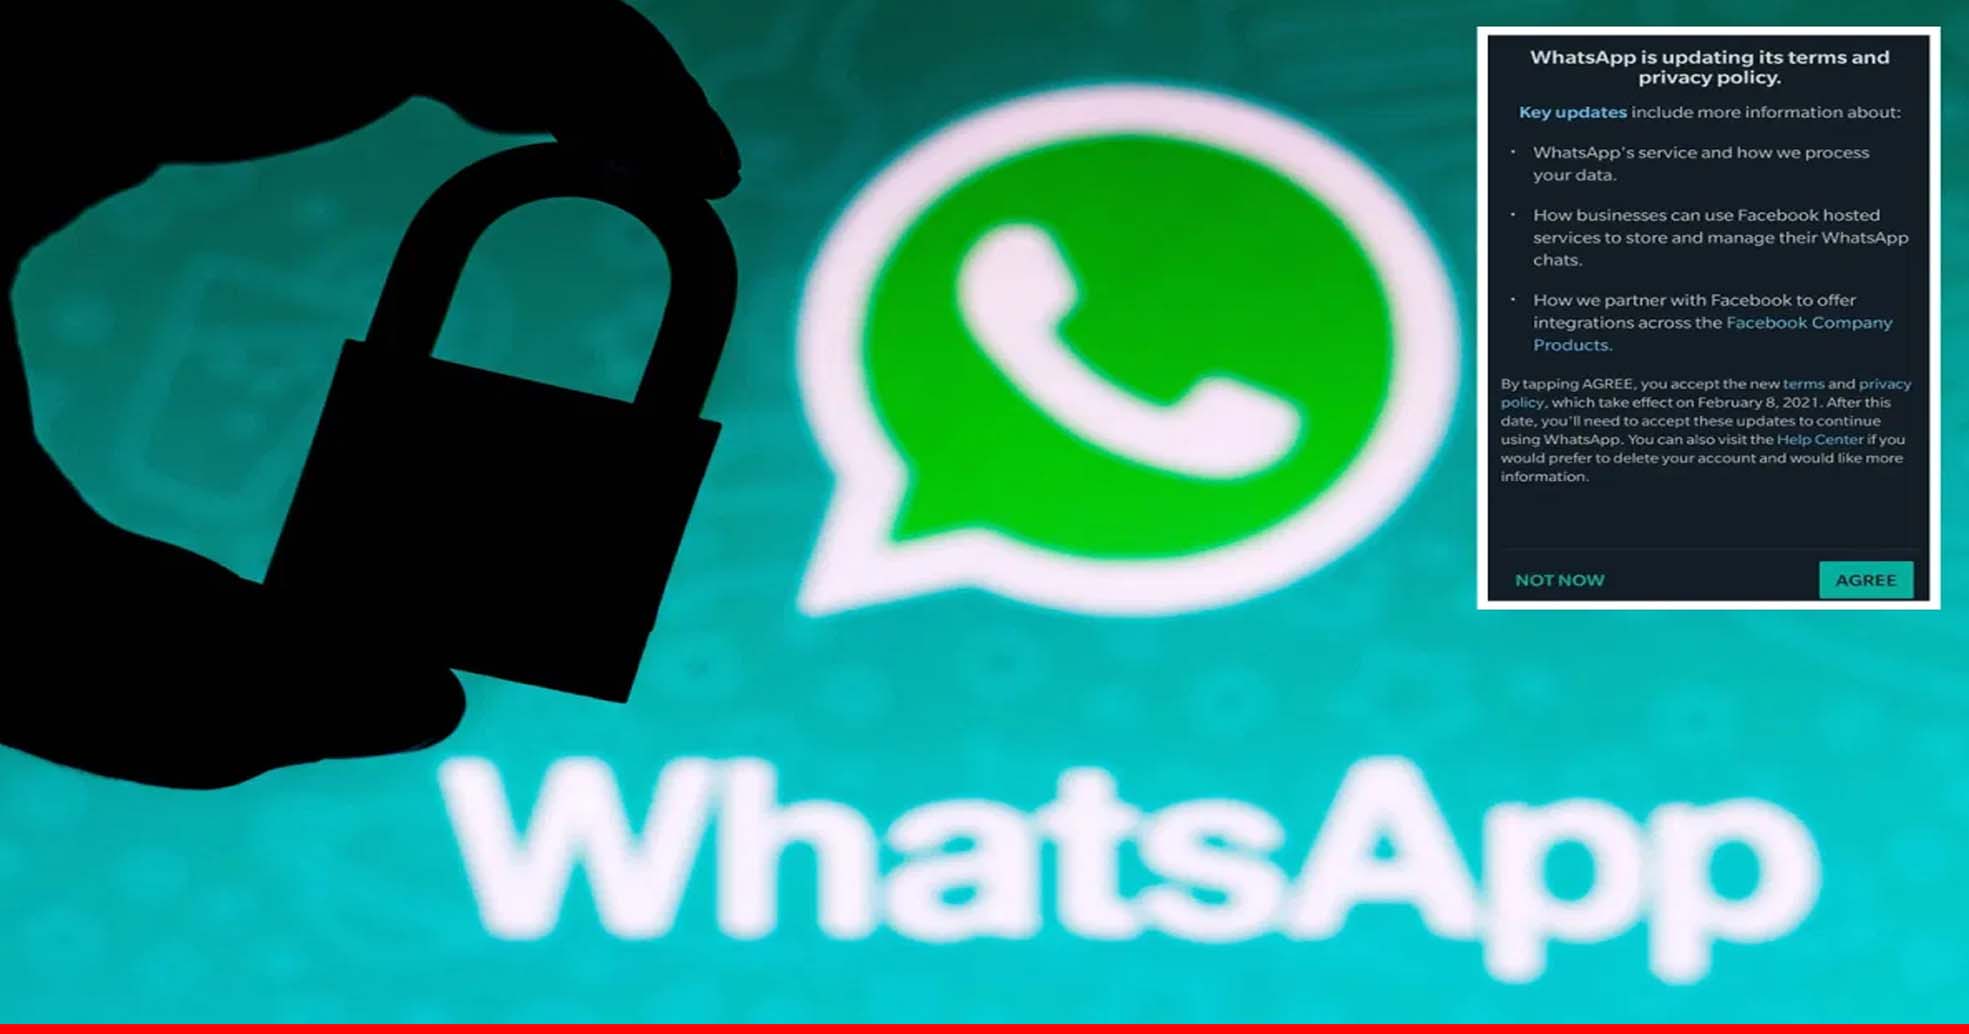 WhatsApp की प्राइवेसी पॉलिसी स्वीकार करने का आज आखिरी दिन, वरना नहीं कर पाएंगे कई फीचर्स का इस्तेमाल